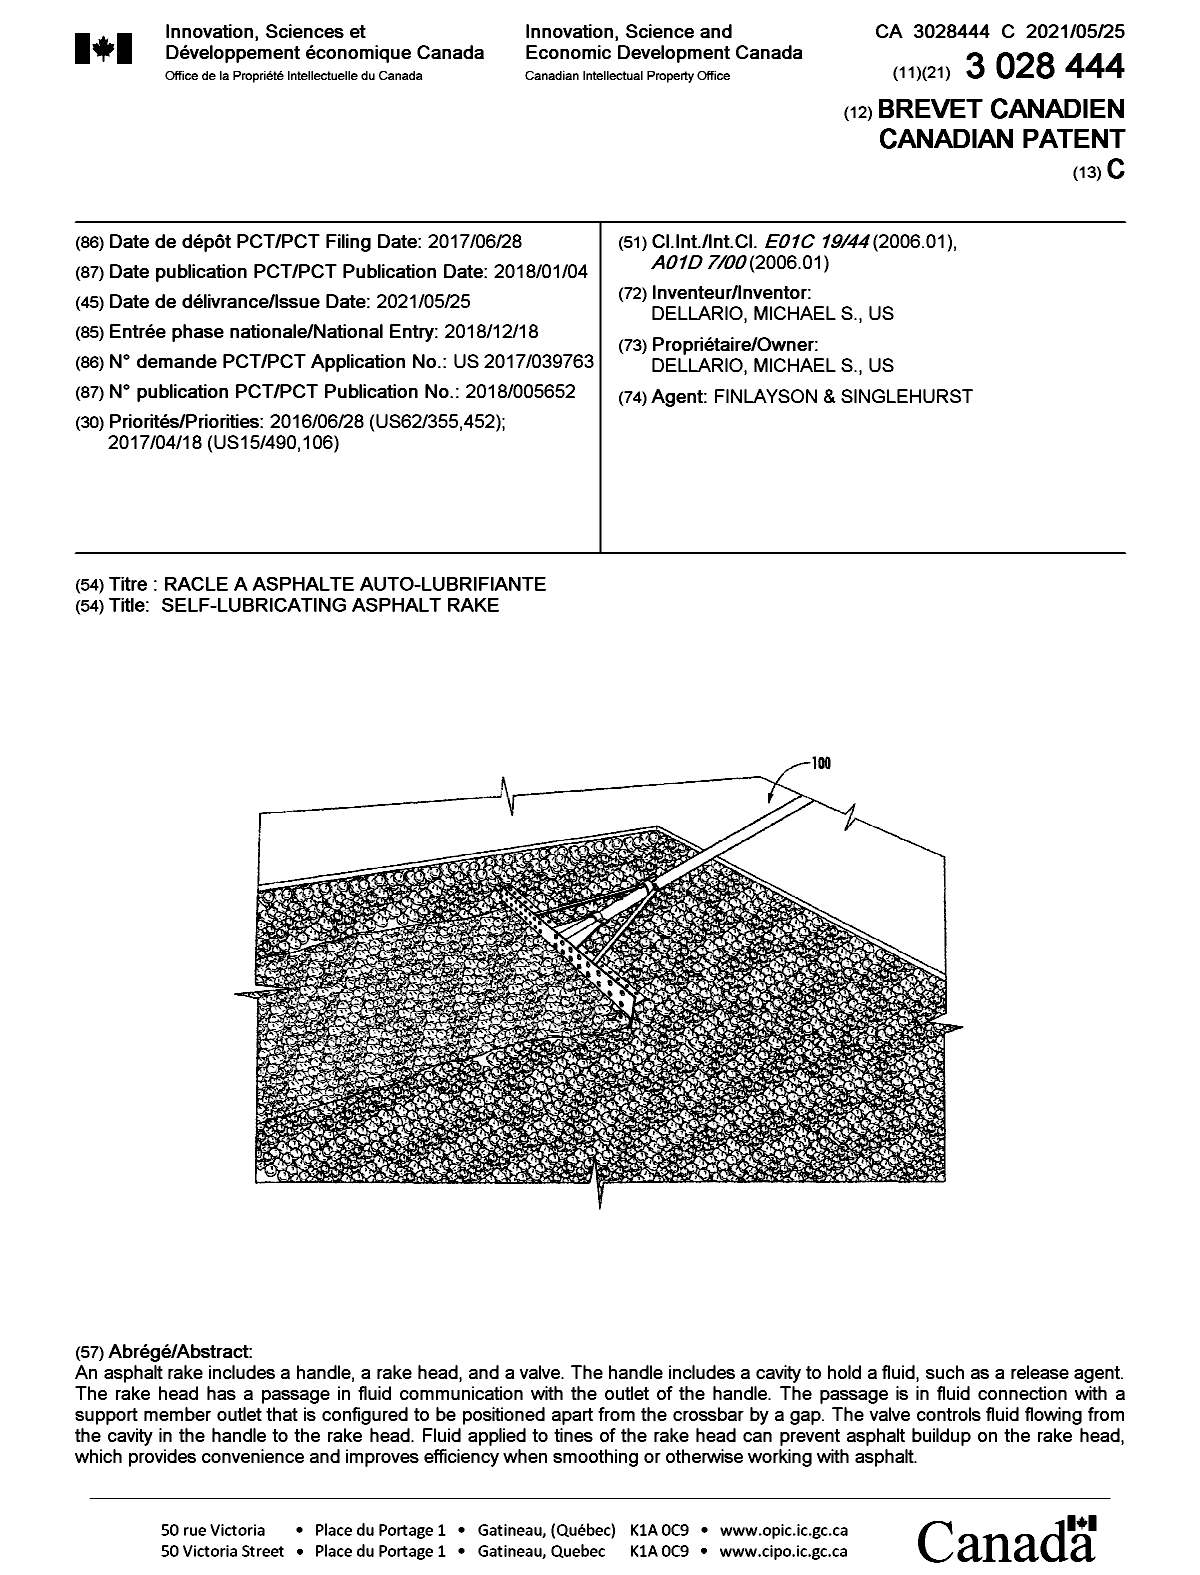 Document de brevet canadien 3028444. Page couverture 20210430. Image 1 de 1